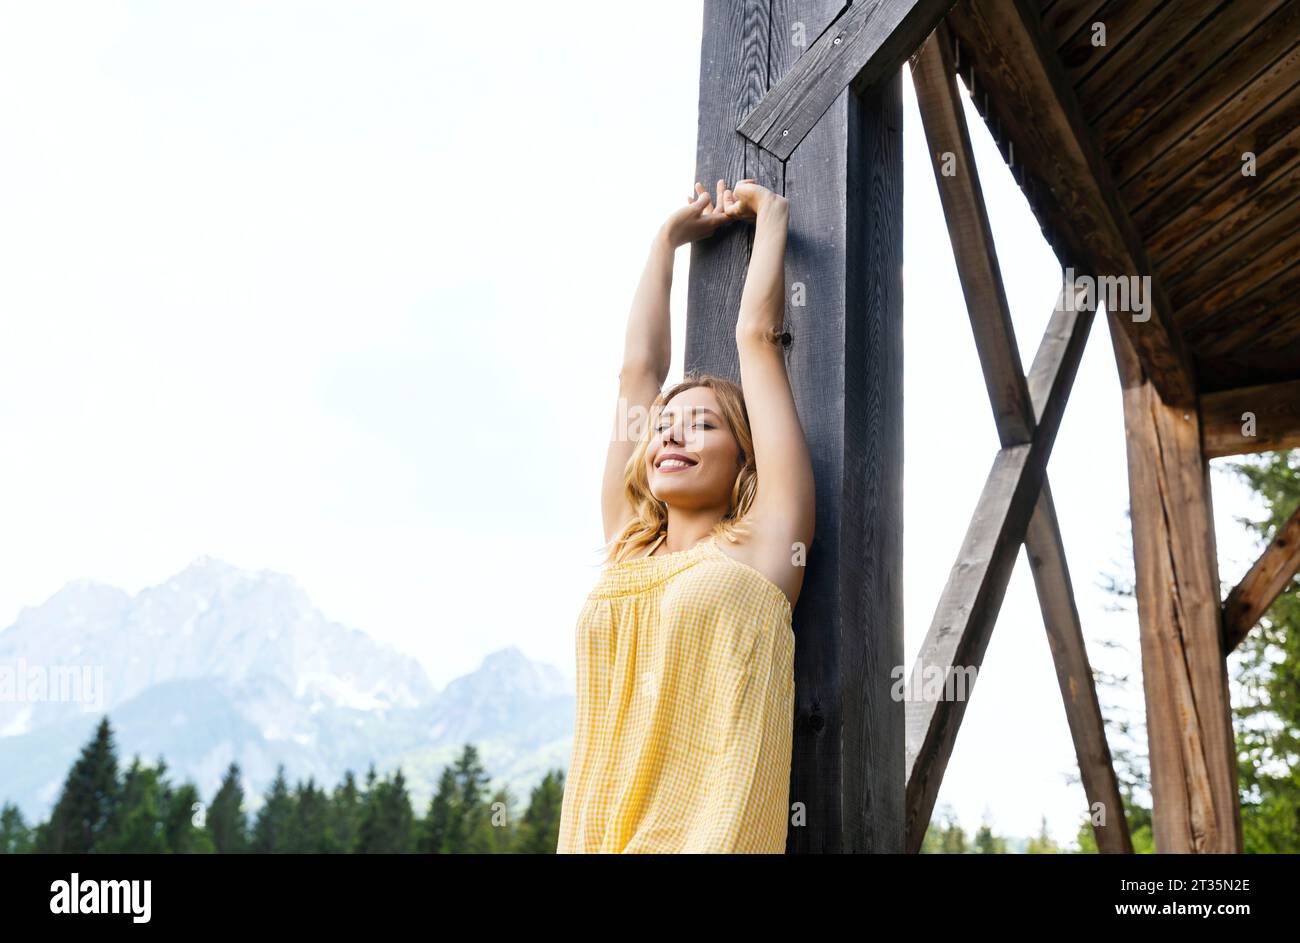 Donna con le braccia alzate appoggiata su una struttura in legno nella riserva naturale di Zelenci Foto Stock